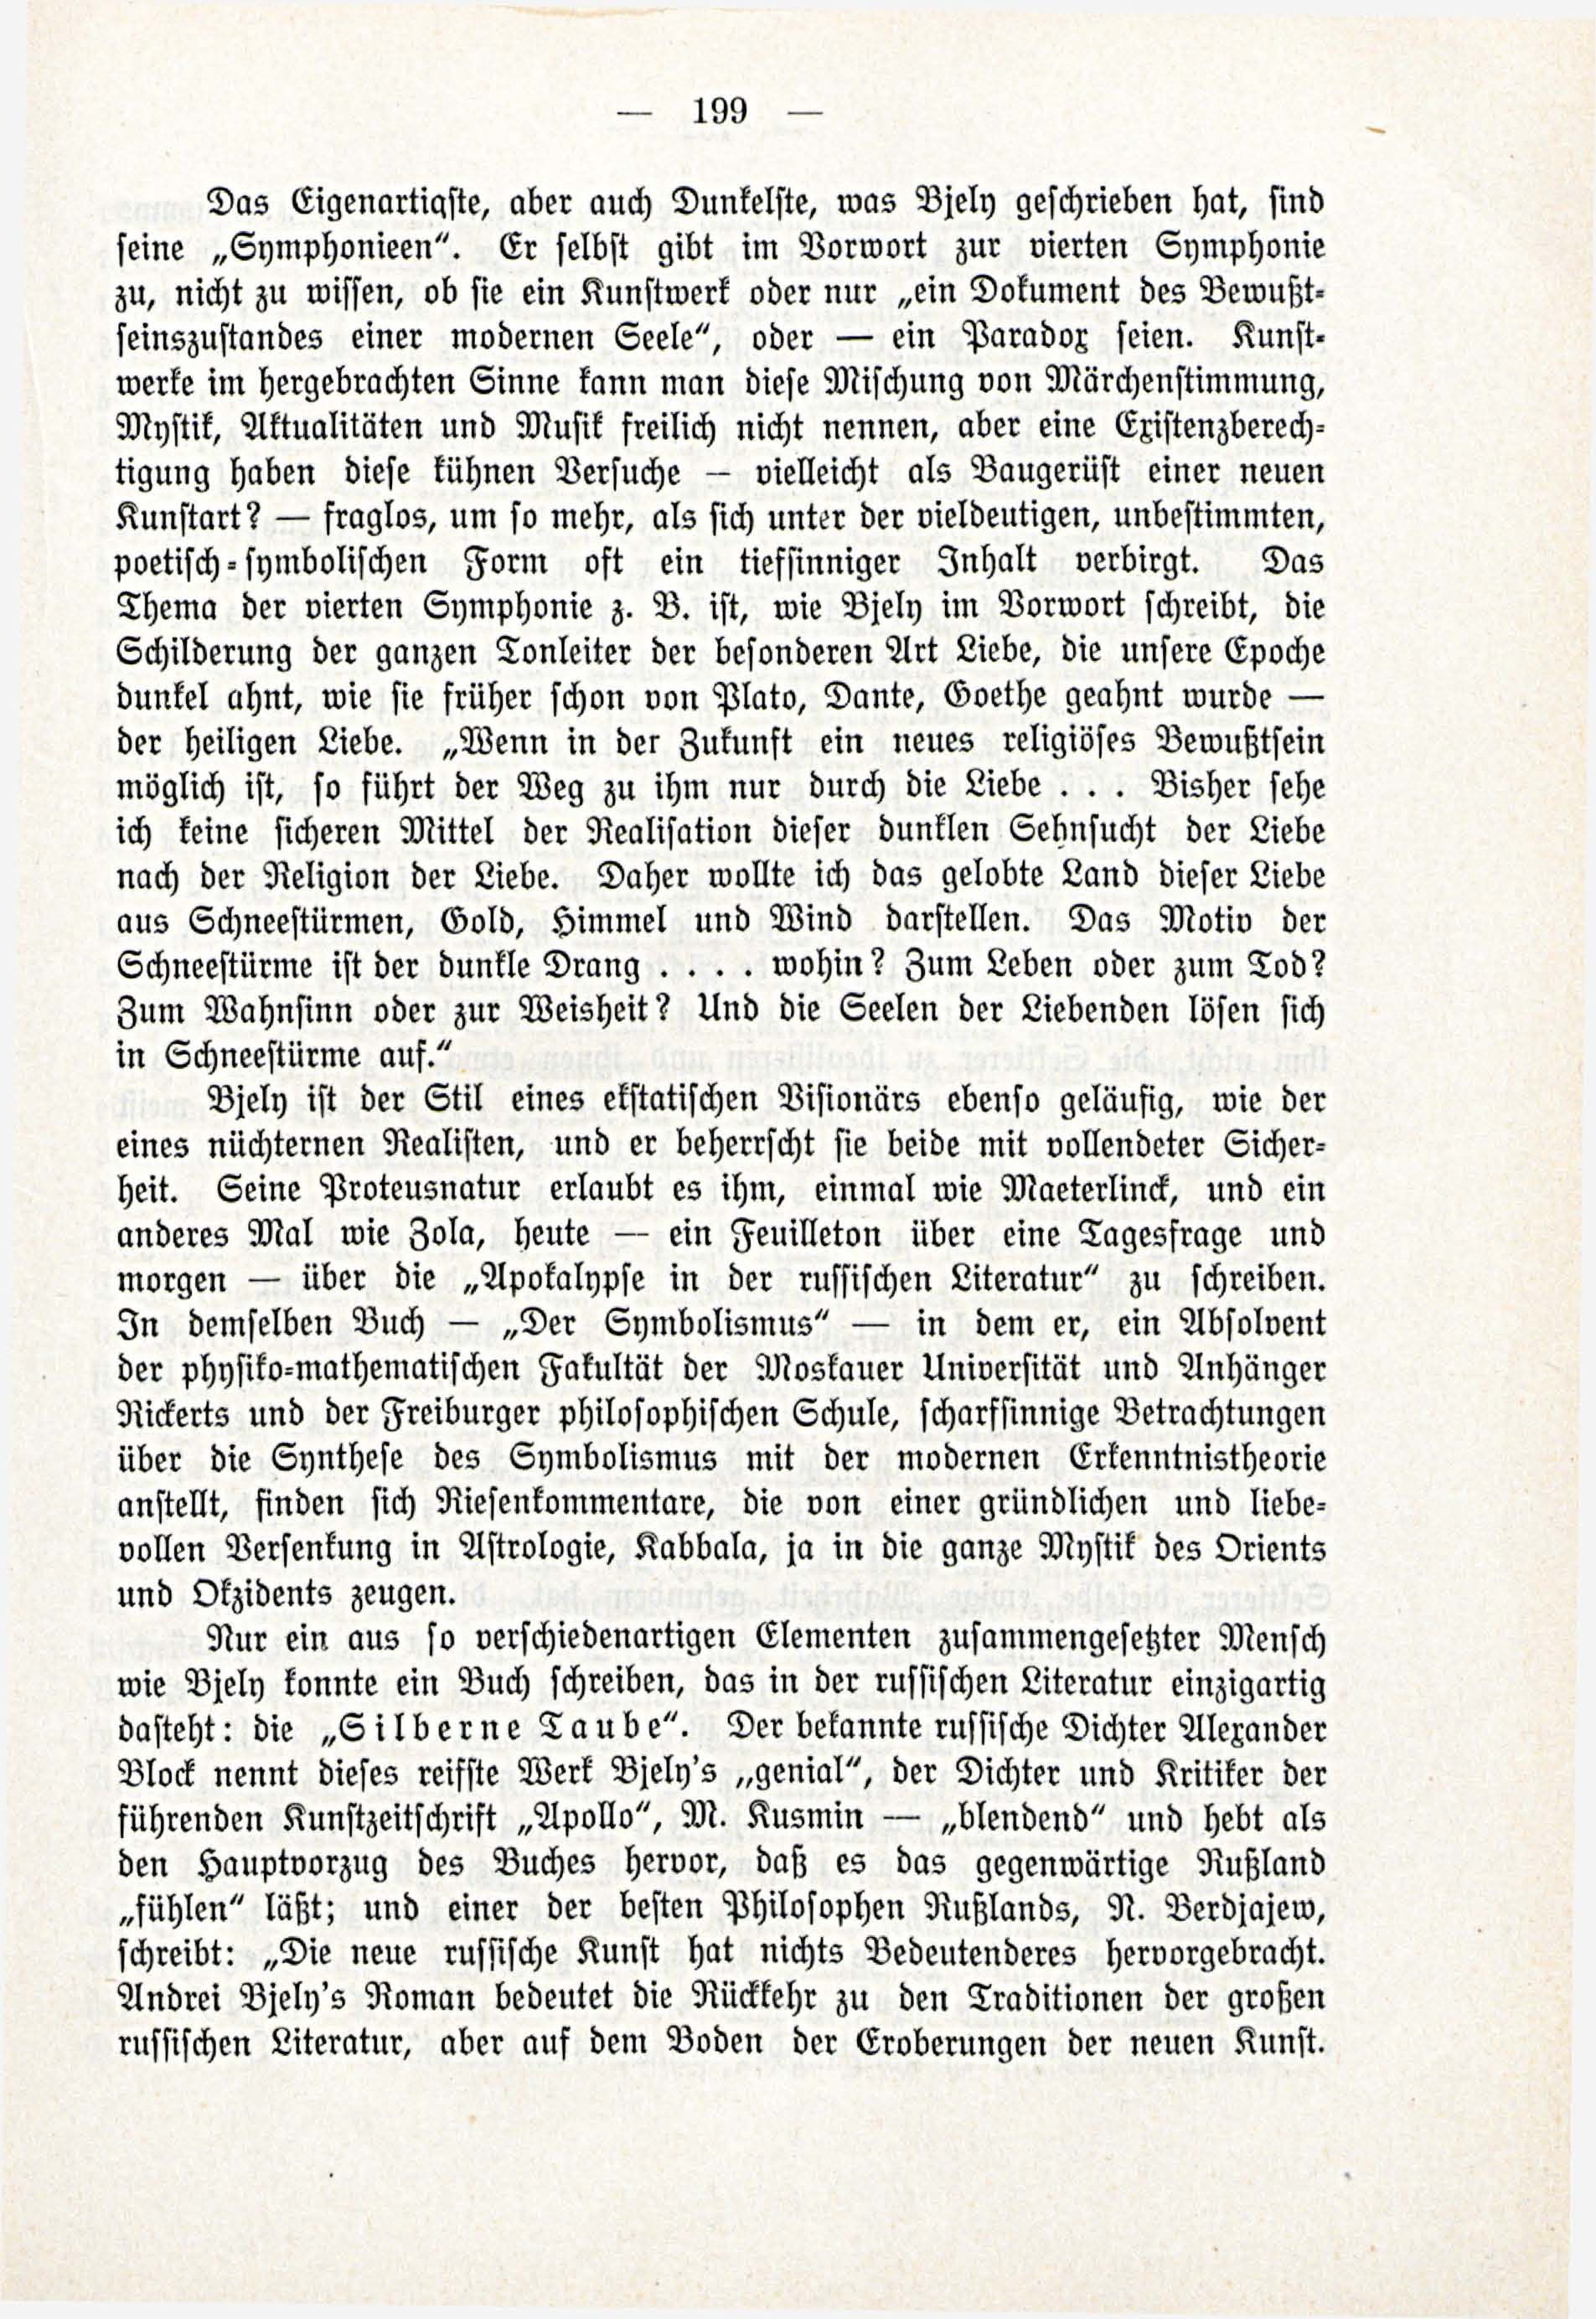 Deutsche Monatsschrift für Russland [3/03] (1914) | 45. (199) Main body of text